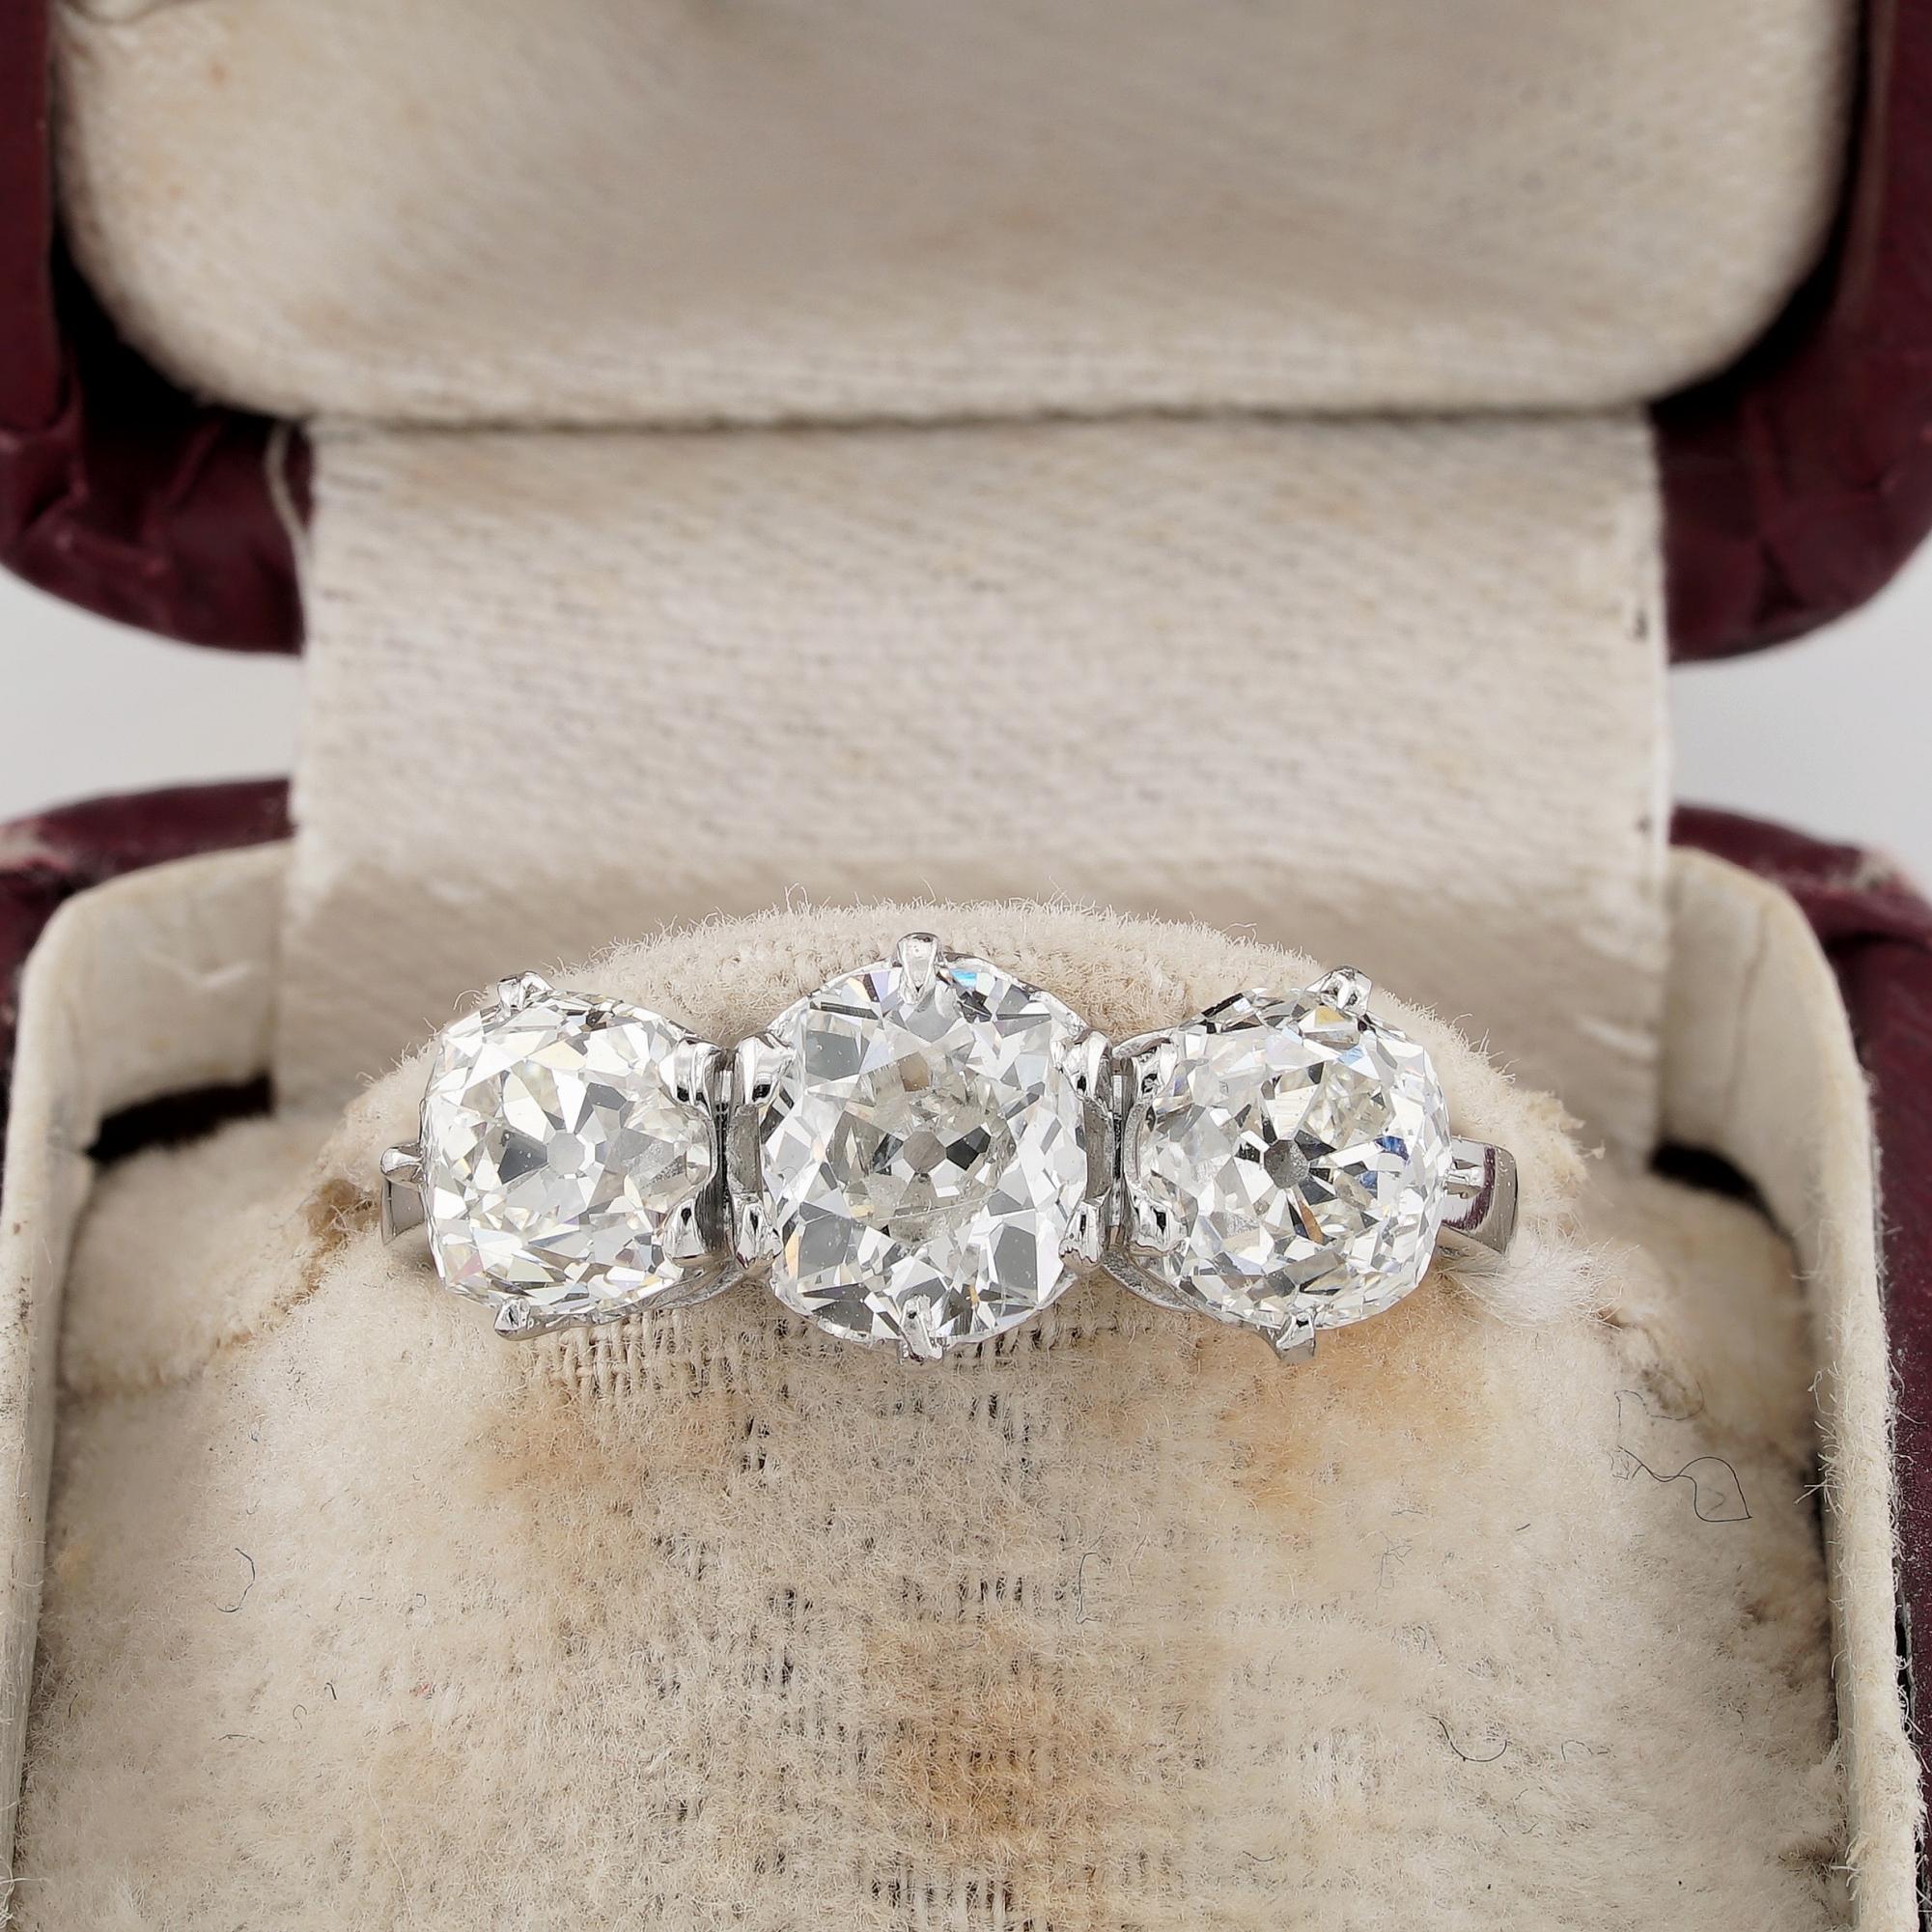 Jeton d'amour
Très belle bague trilogie de 2,90 ct de diamants taillés à l'ancienne
Un trio fabuleux et remarquable de diamants taillés à l'ancienne, facettés à la main en 1800, réinitialisés au fil du temps dans un style plus robuste, plus vintage,